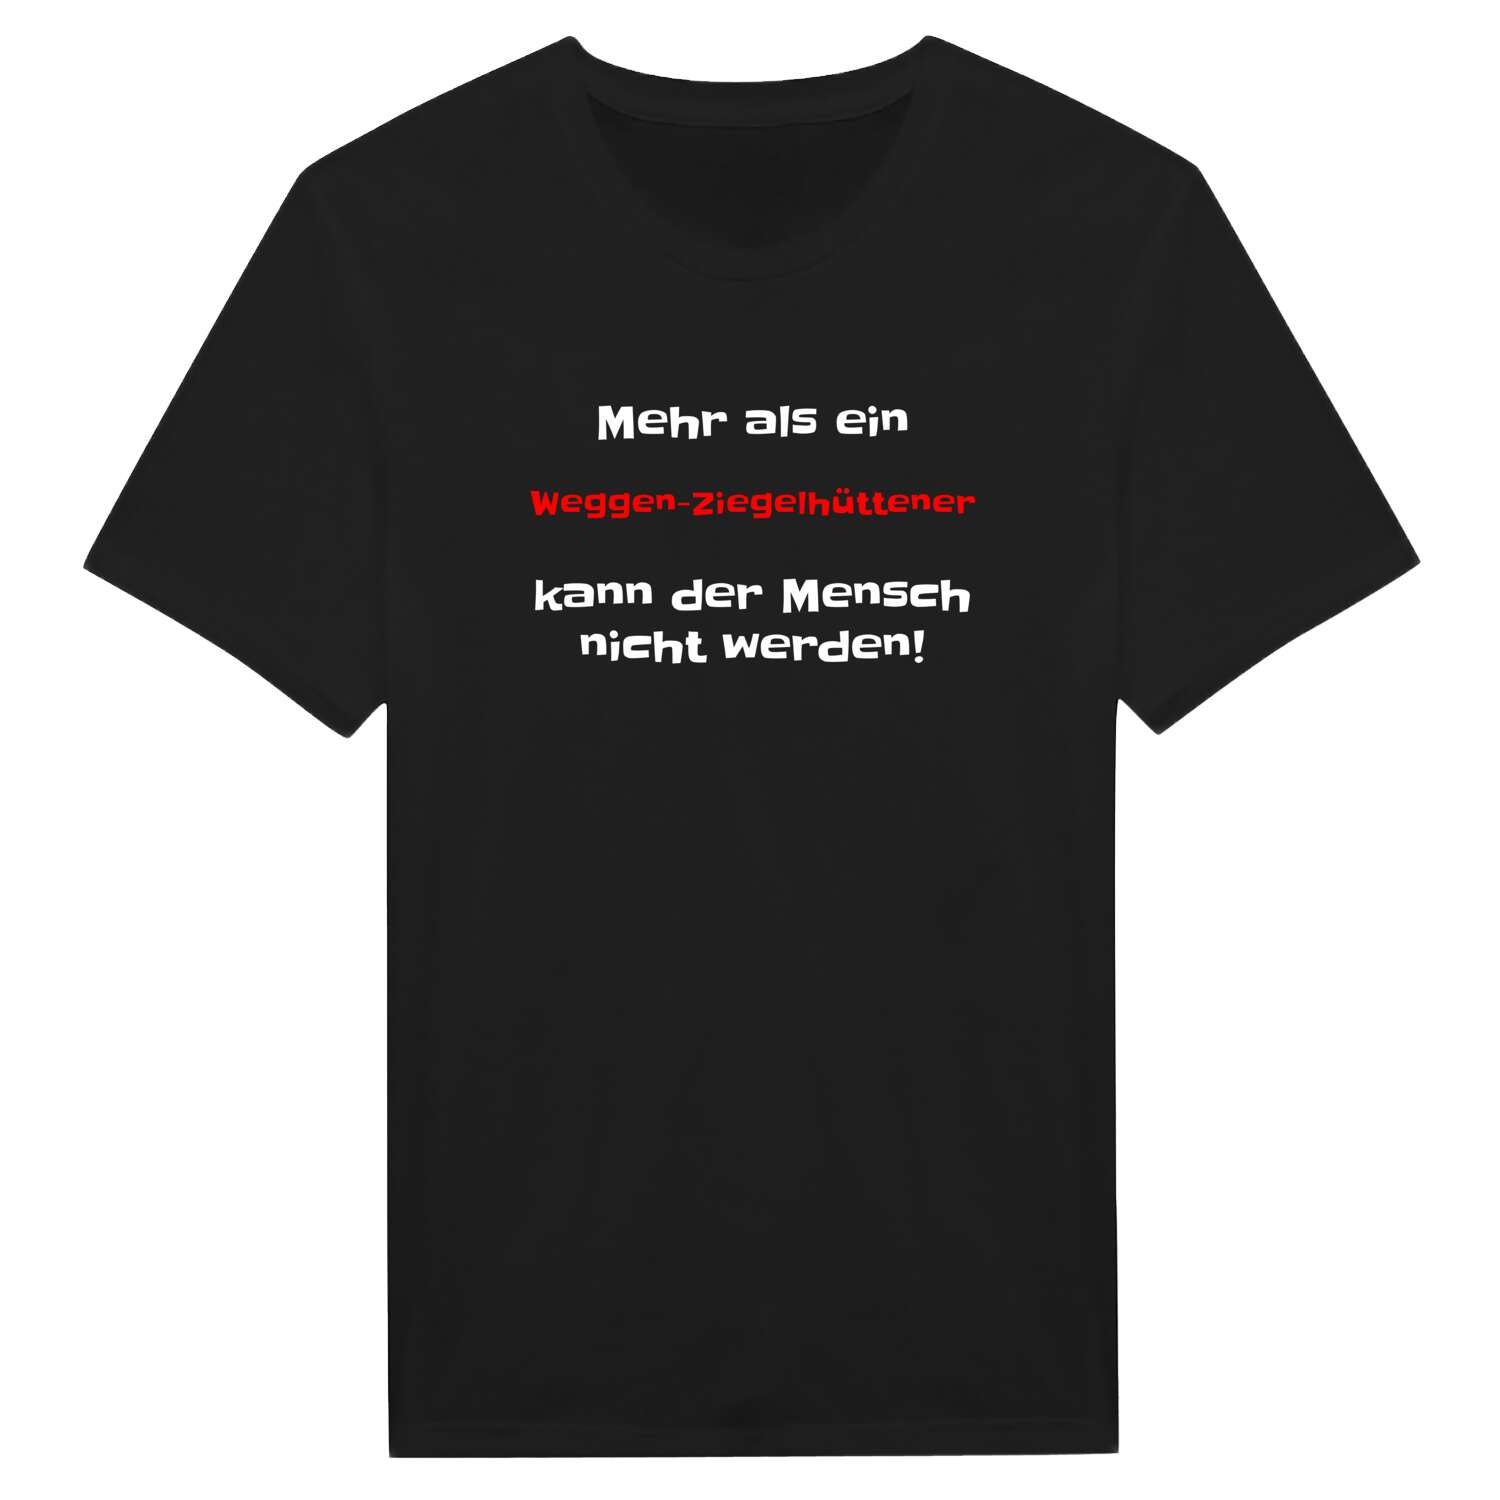 Weggen-Ziegelhütte T-Shirt »Mehr als ein«